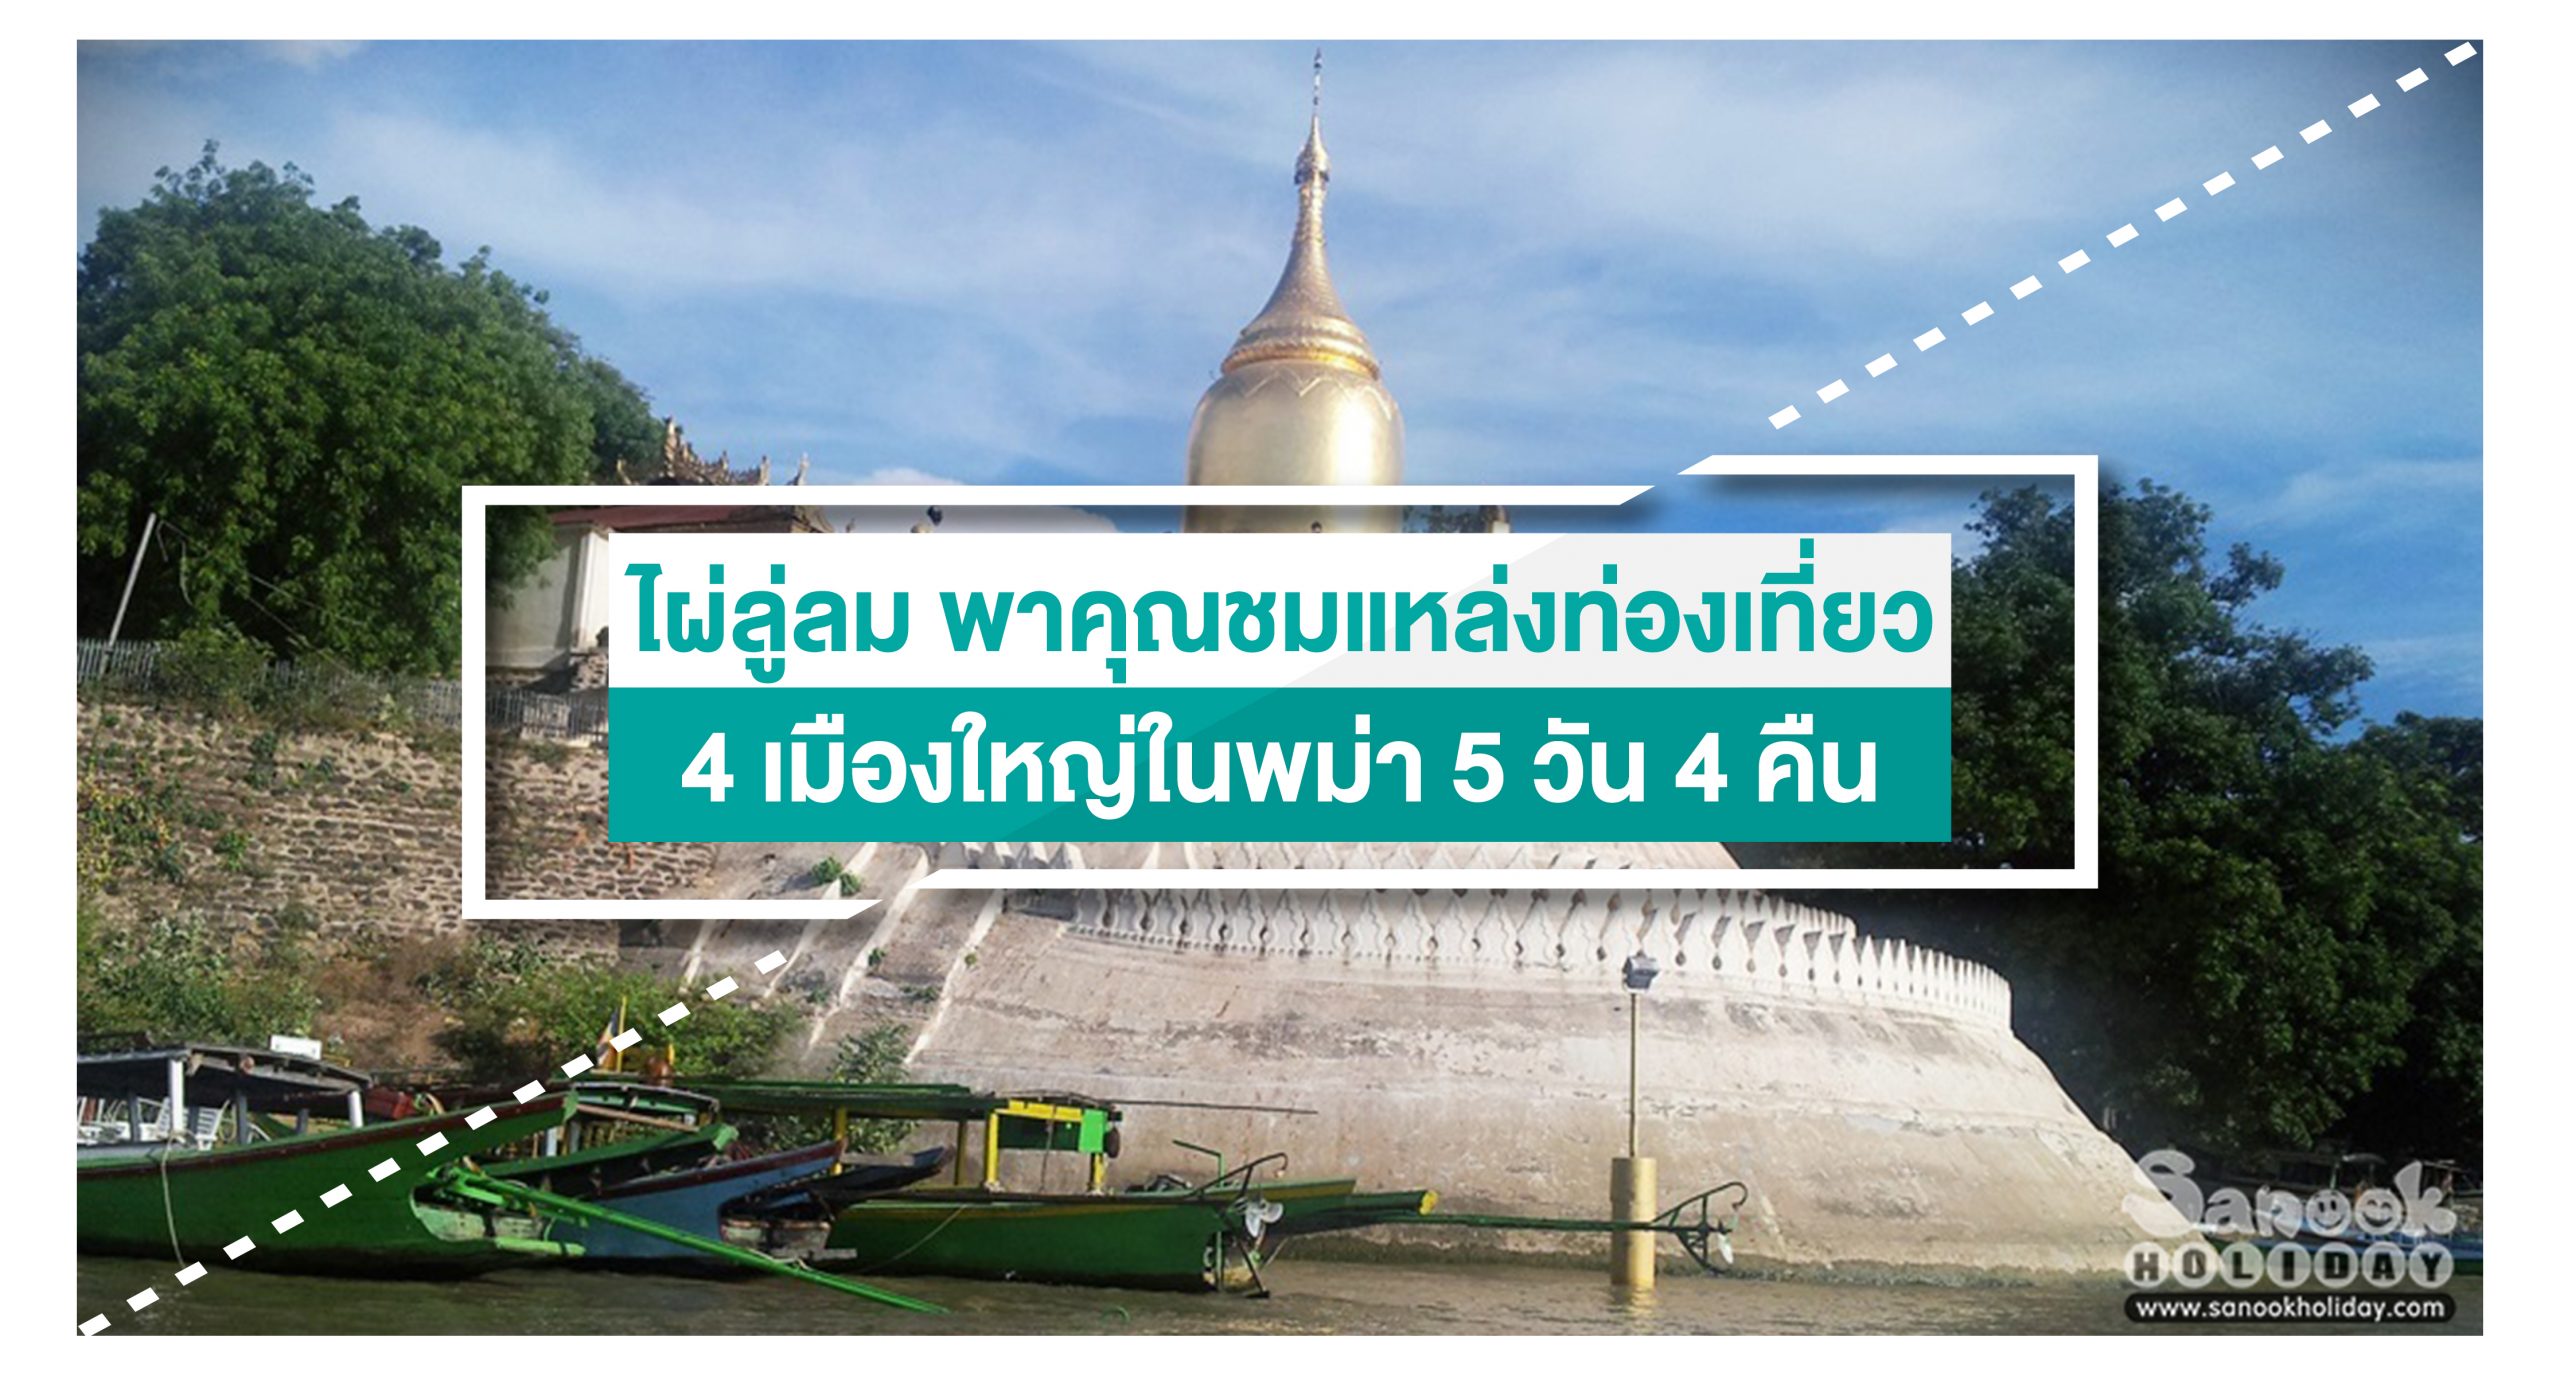 ไผ่ลู่ลม พาคุณชมแหล่งท่องเที่ยวสี่เมืองใหญ่ในพม่า 5 วัน 4 คืน